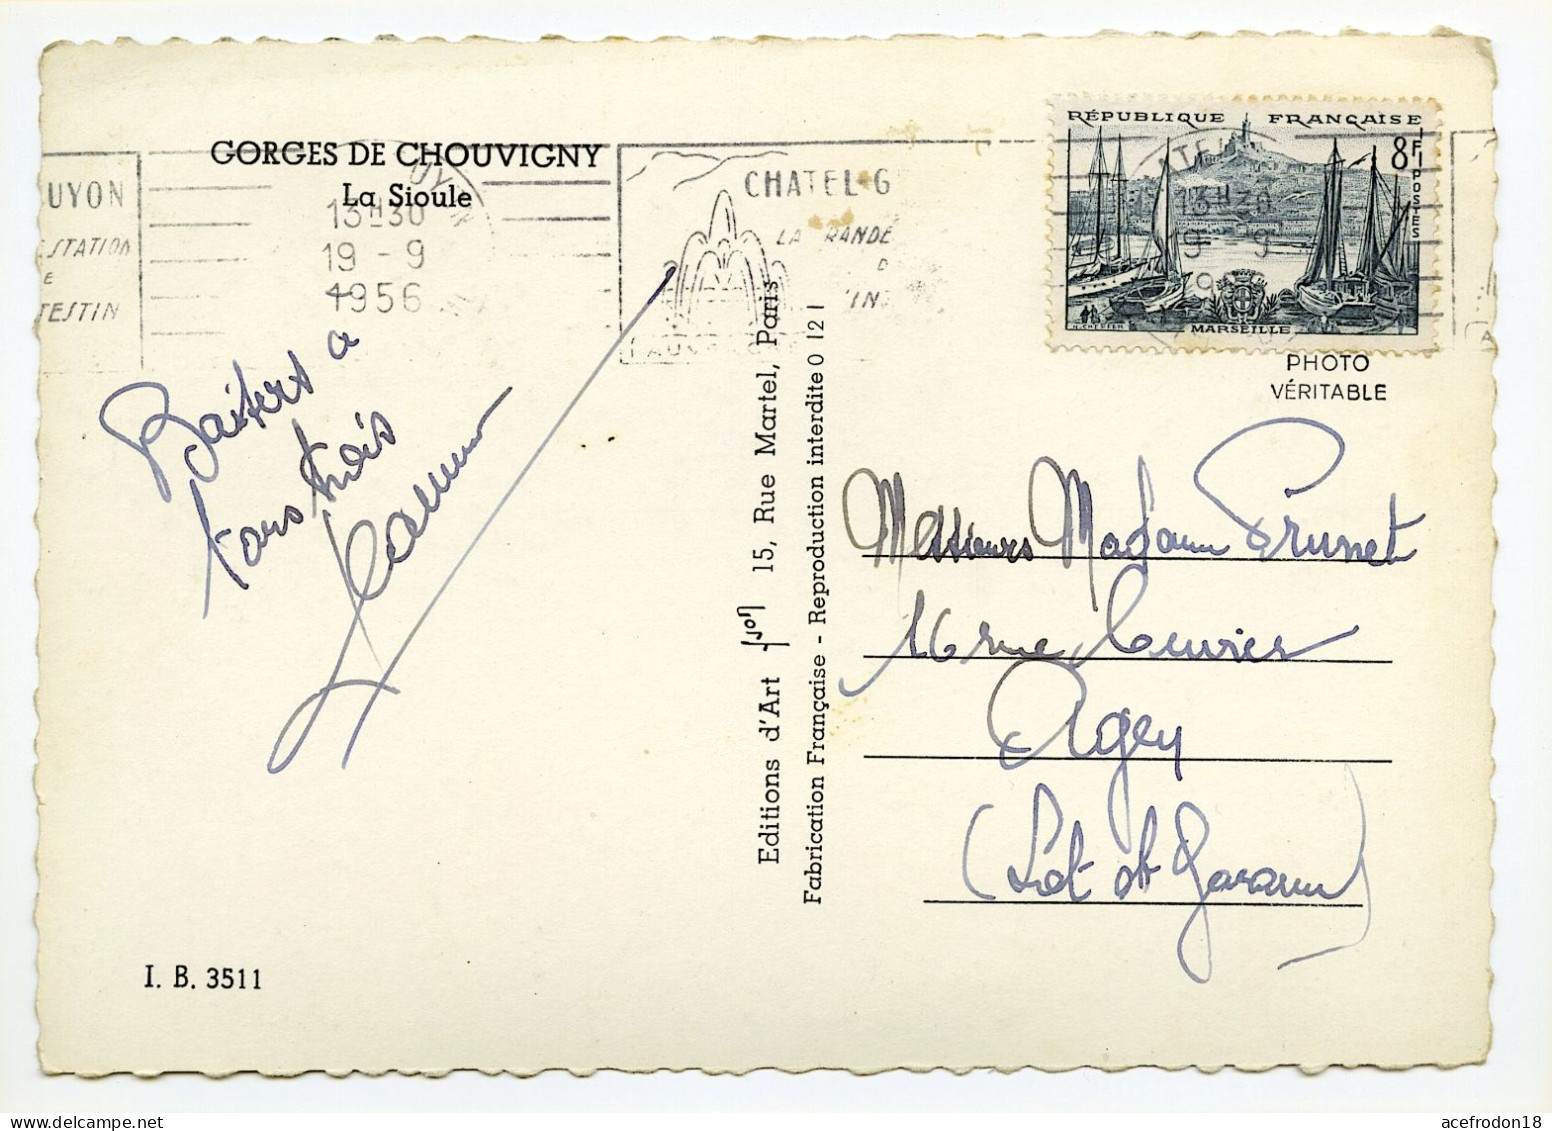 Cpsm Postée De Châtel-Guyon (Puy-de-Dôme) Pour Agen - Gorges De Chouvigny - Timbre Marseille 8f 1954 - Used Stamps